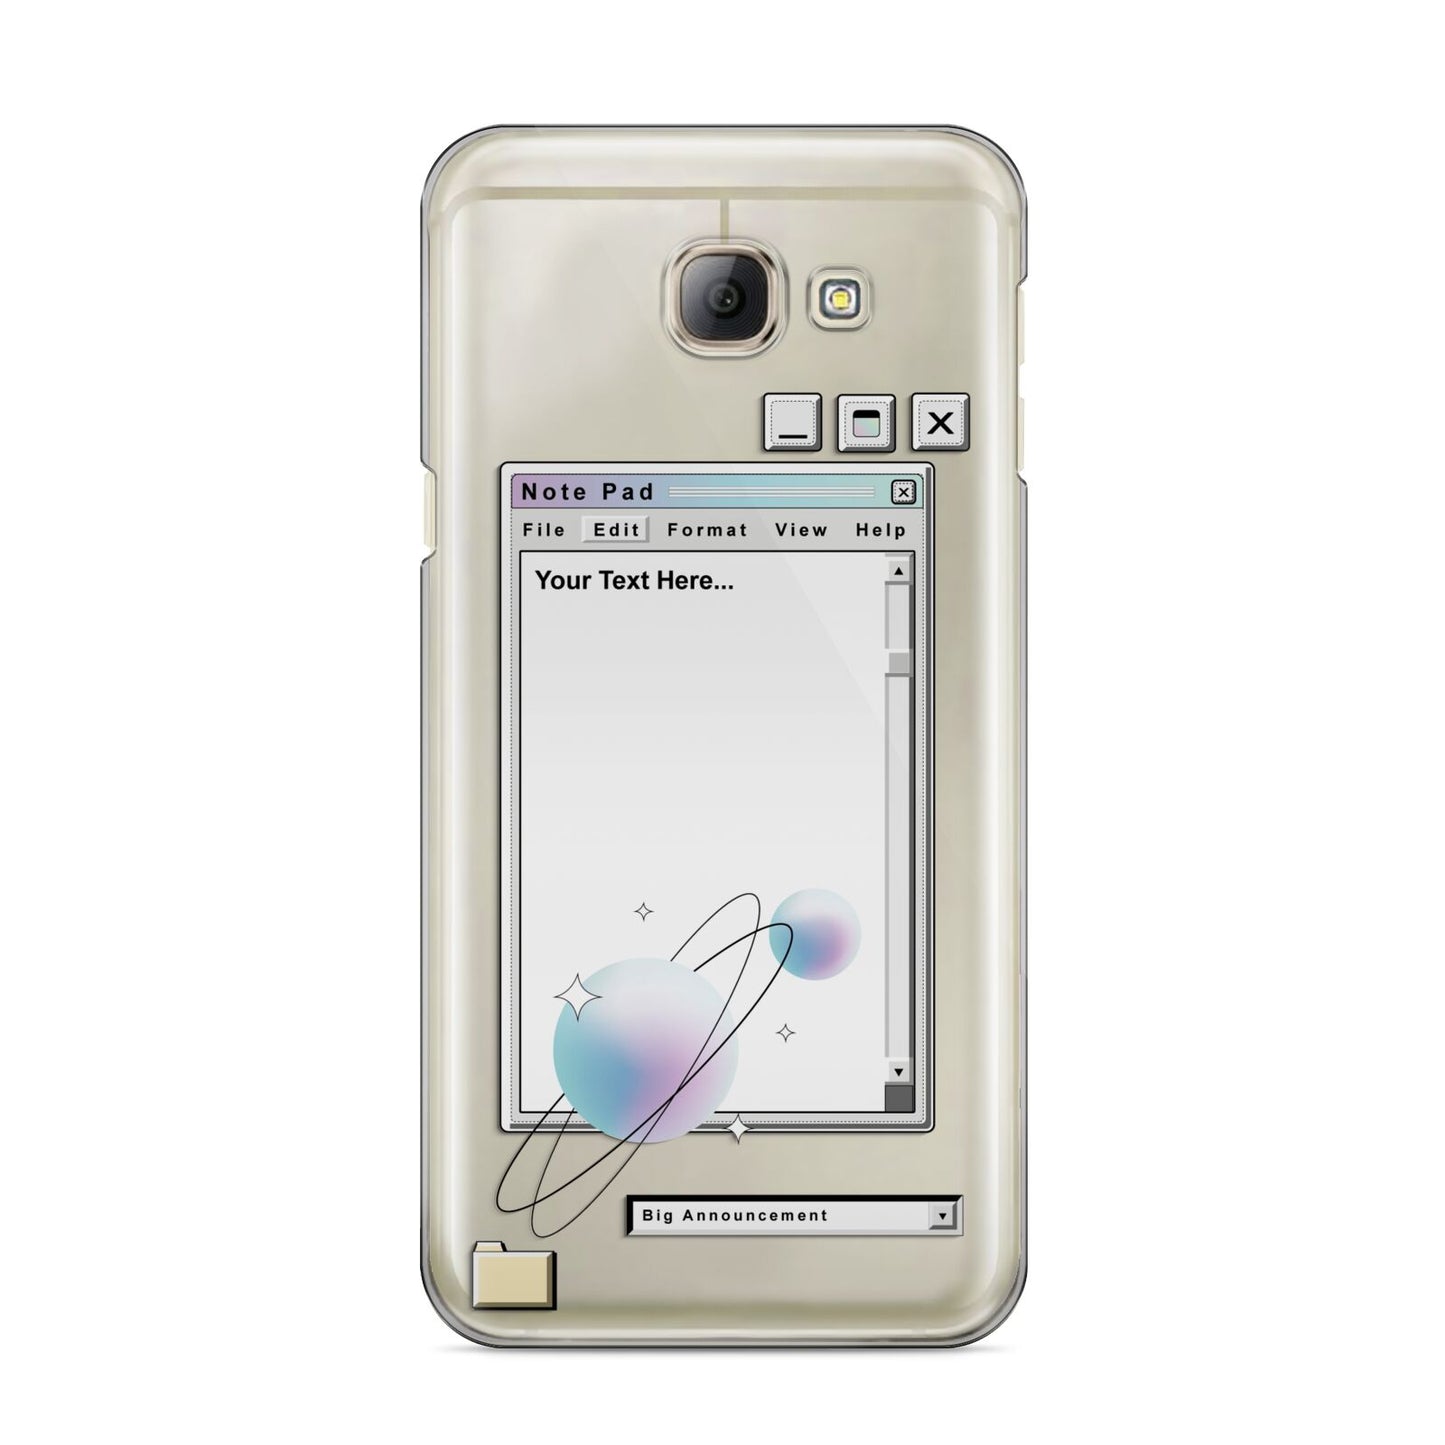 Retro Note Pad Samsung Galaxy A8 2016 Case